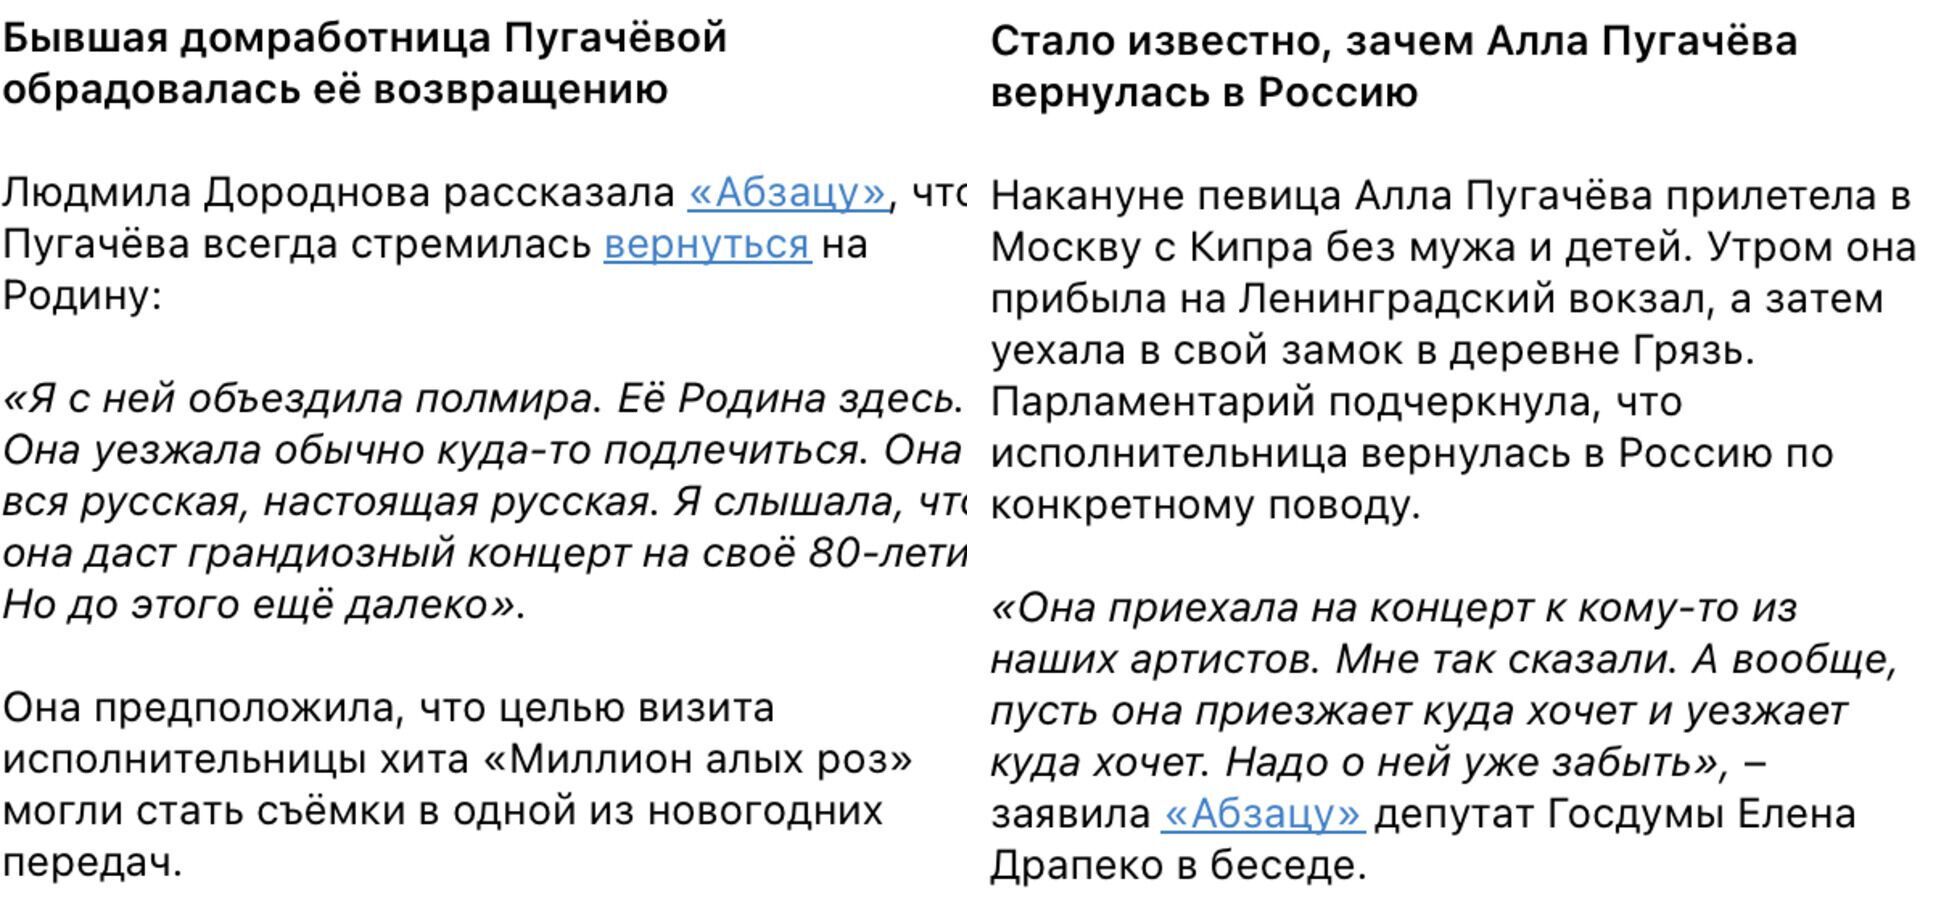 Пугачева покинула Галкина и готовится к концерту в РФ? Российские пропагандисты опять опозорились